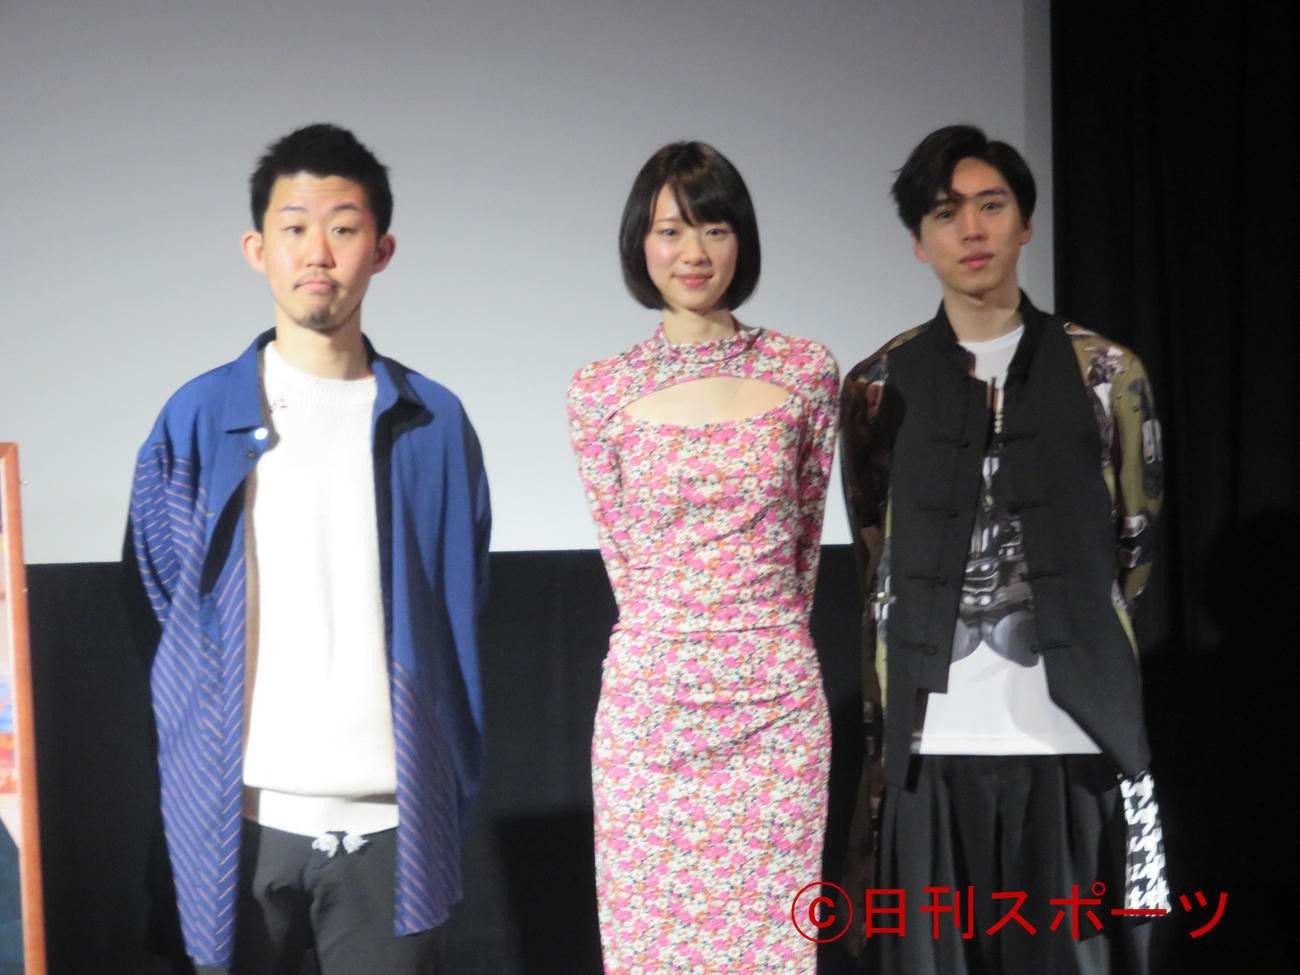 映画「フタリノセカイ」の舞台あいさつに出席した、左から飯塚花笑監督、片山友希、坂東龍汰